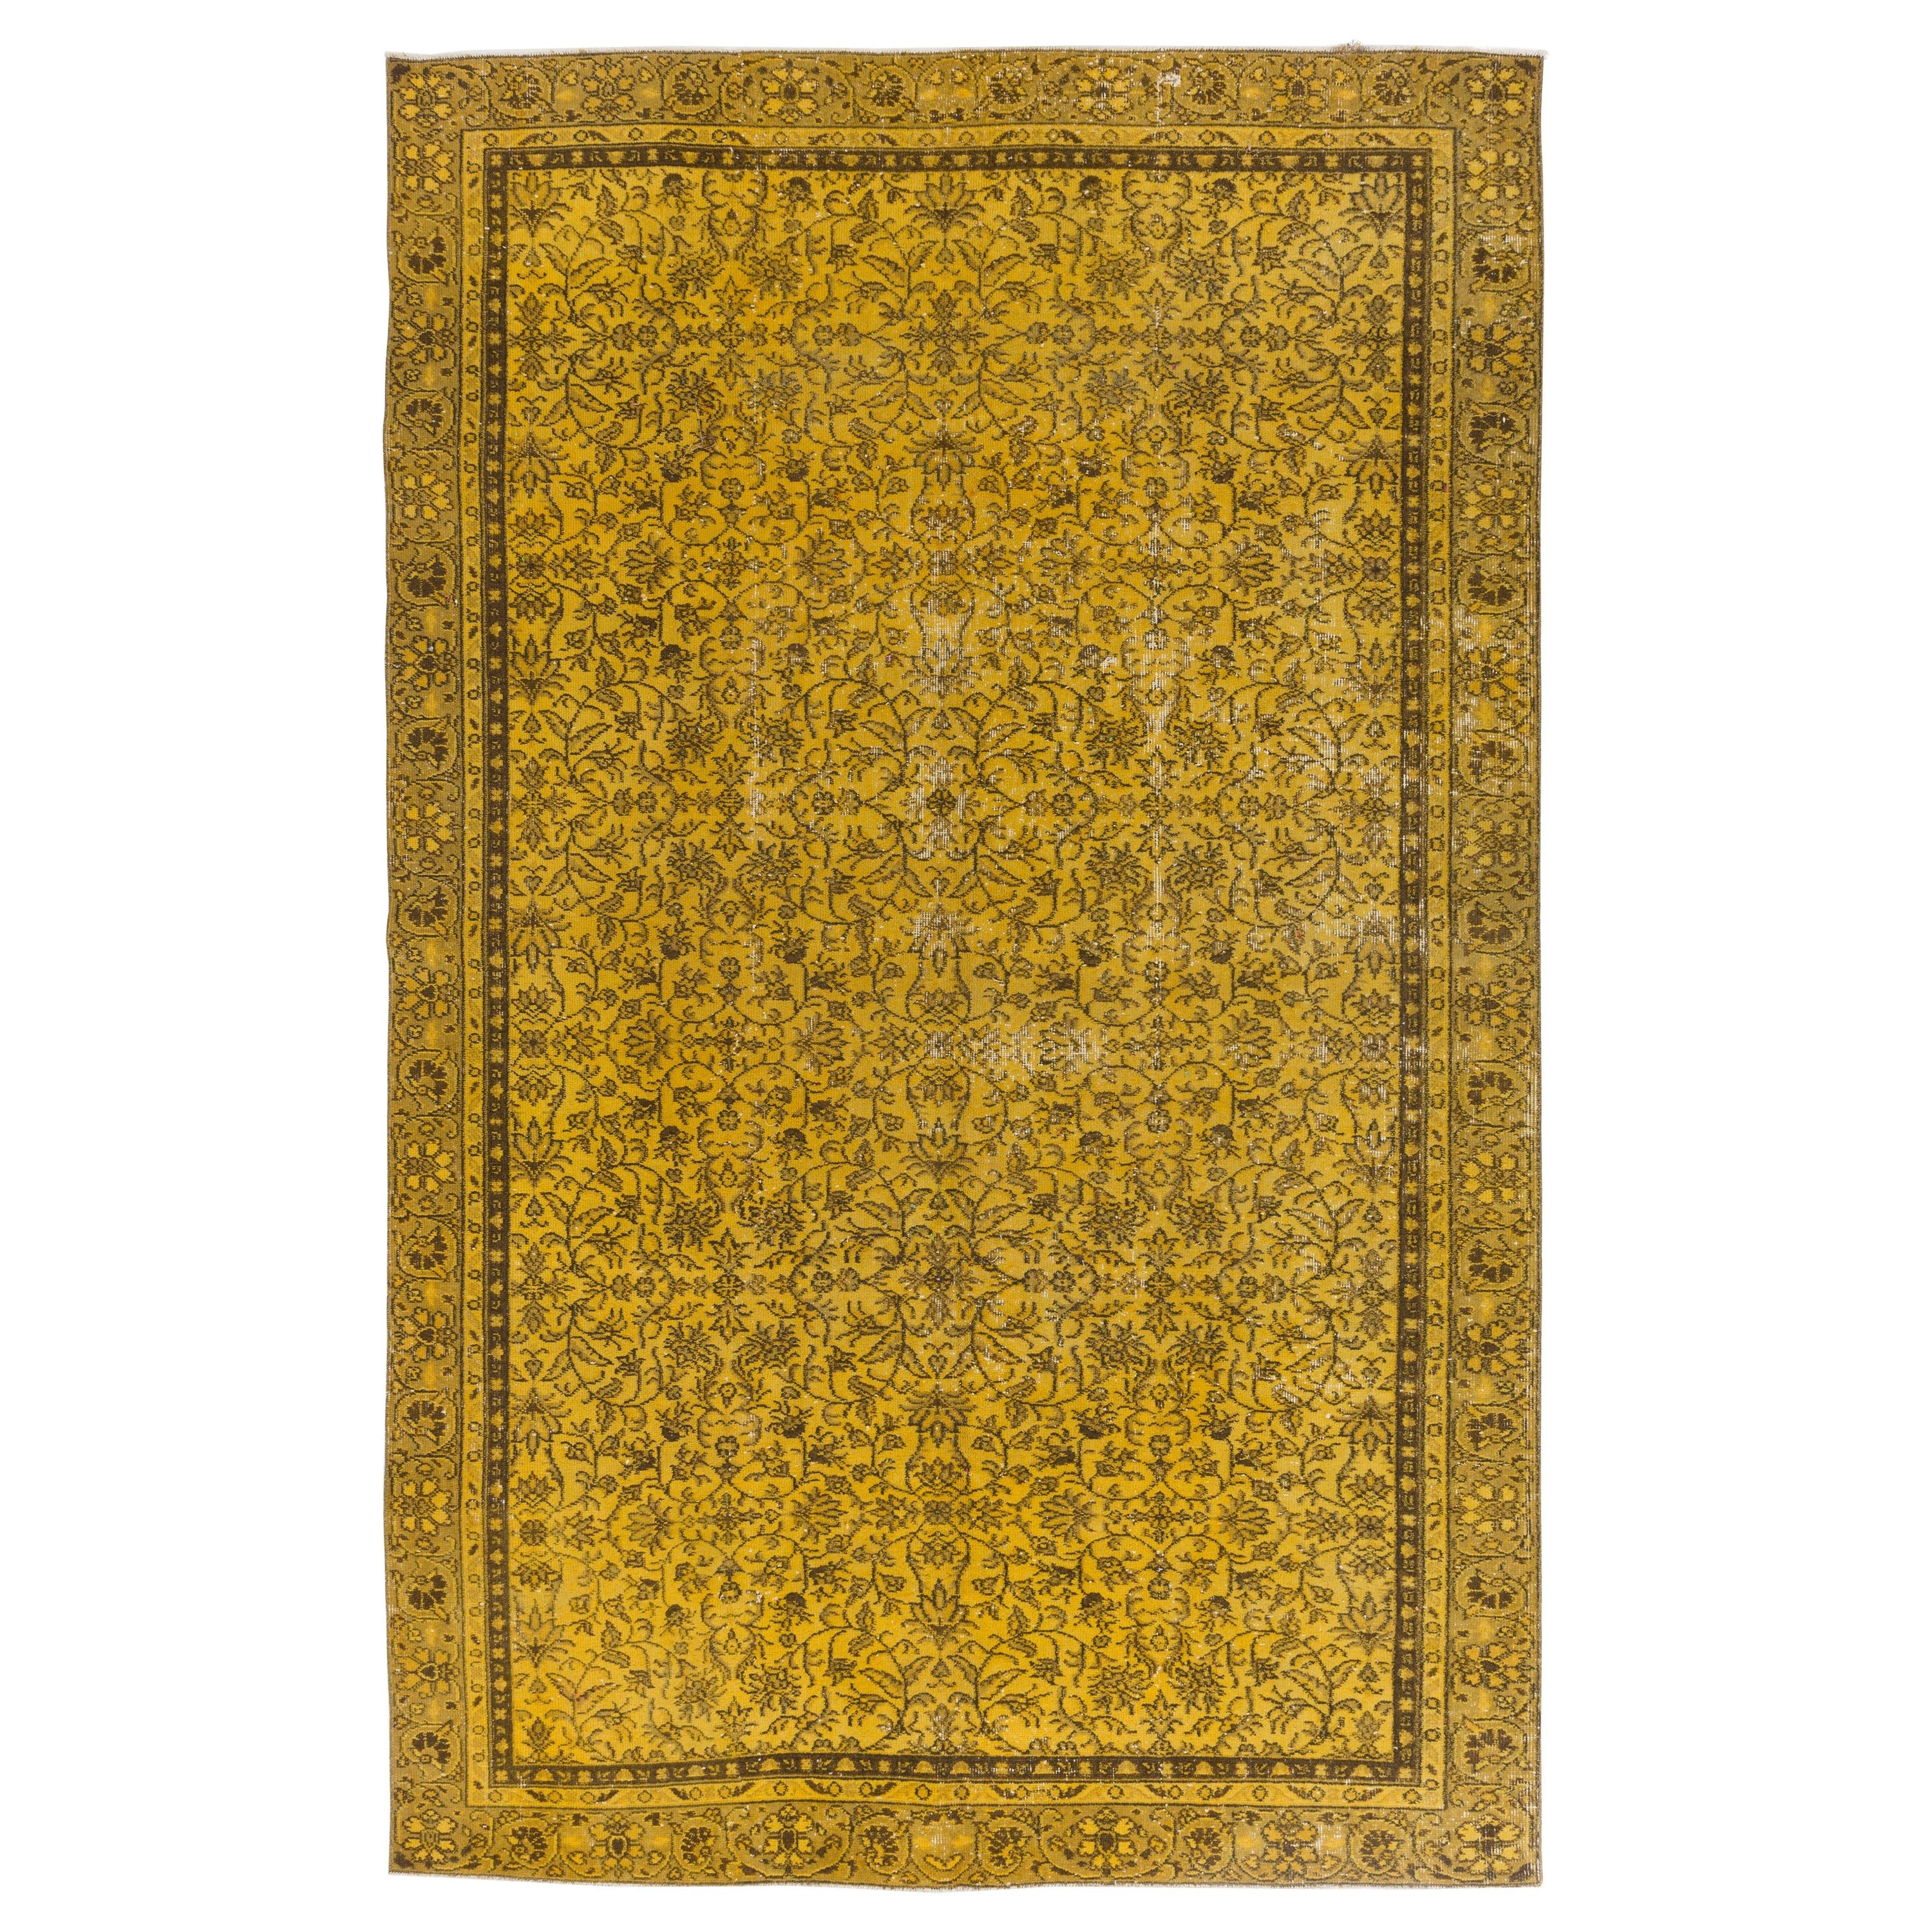 Tapis Modernity fait main en jaune, tapis turc à motifs floraux